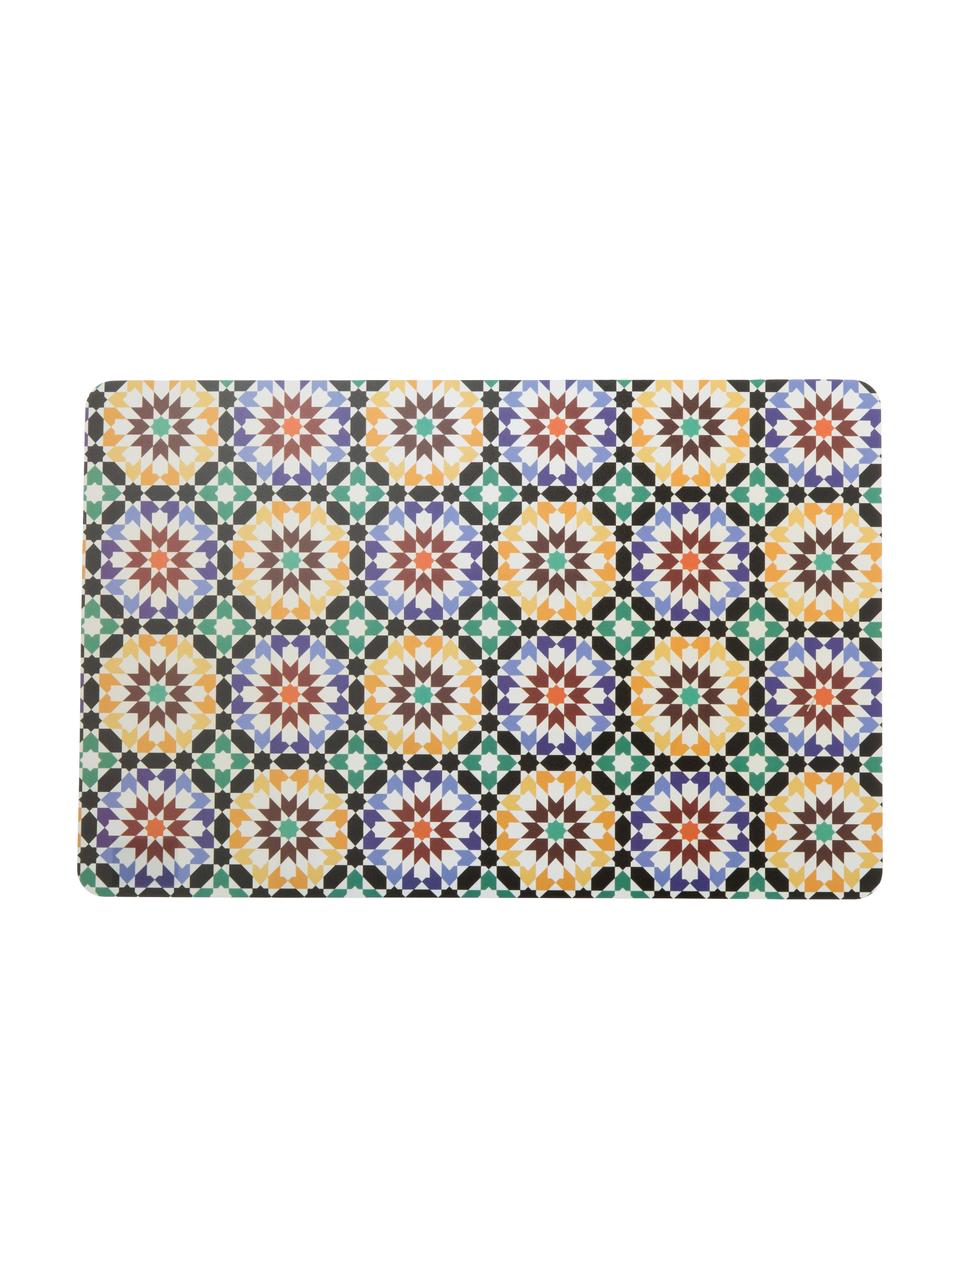 Kunststof placemats Marrakech, 6er set, Kunststof, Multicolour, 28 x 44 cm